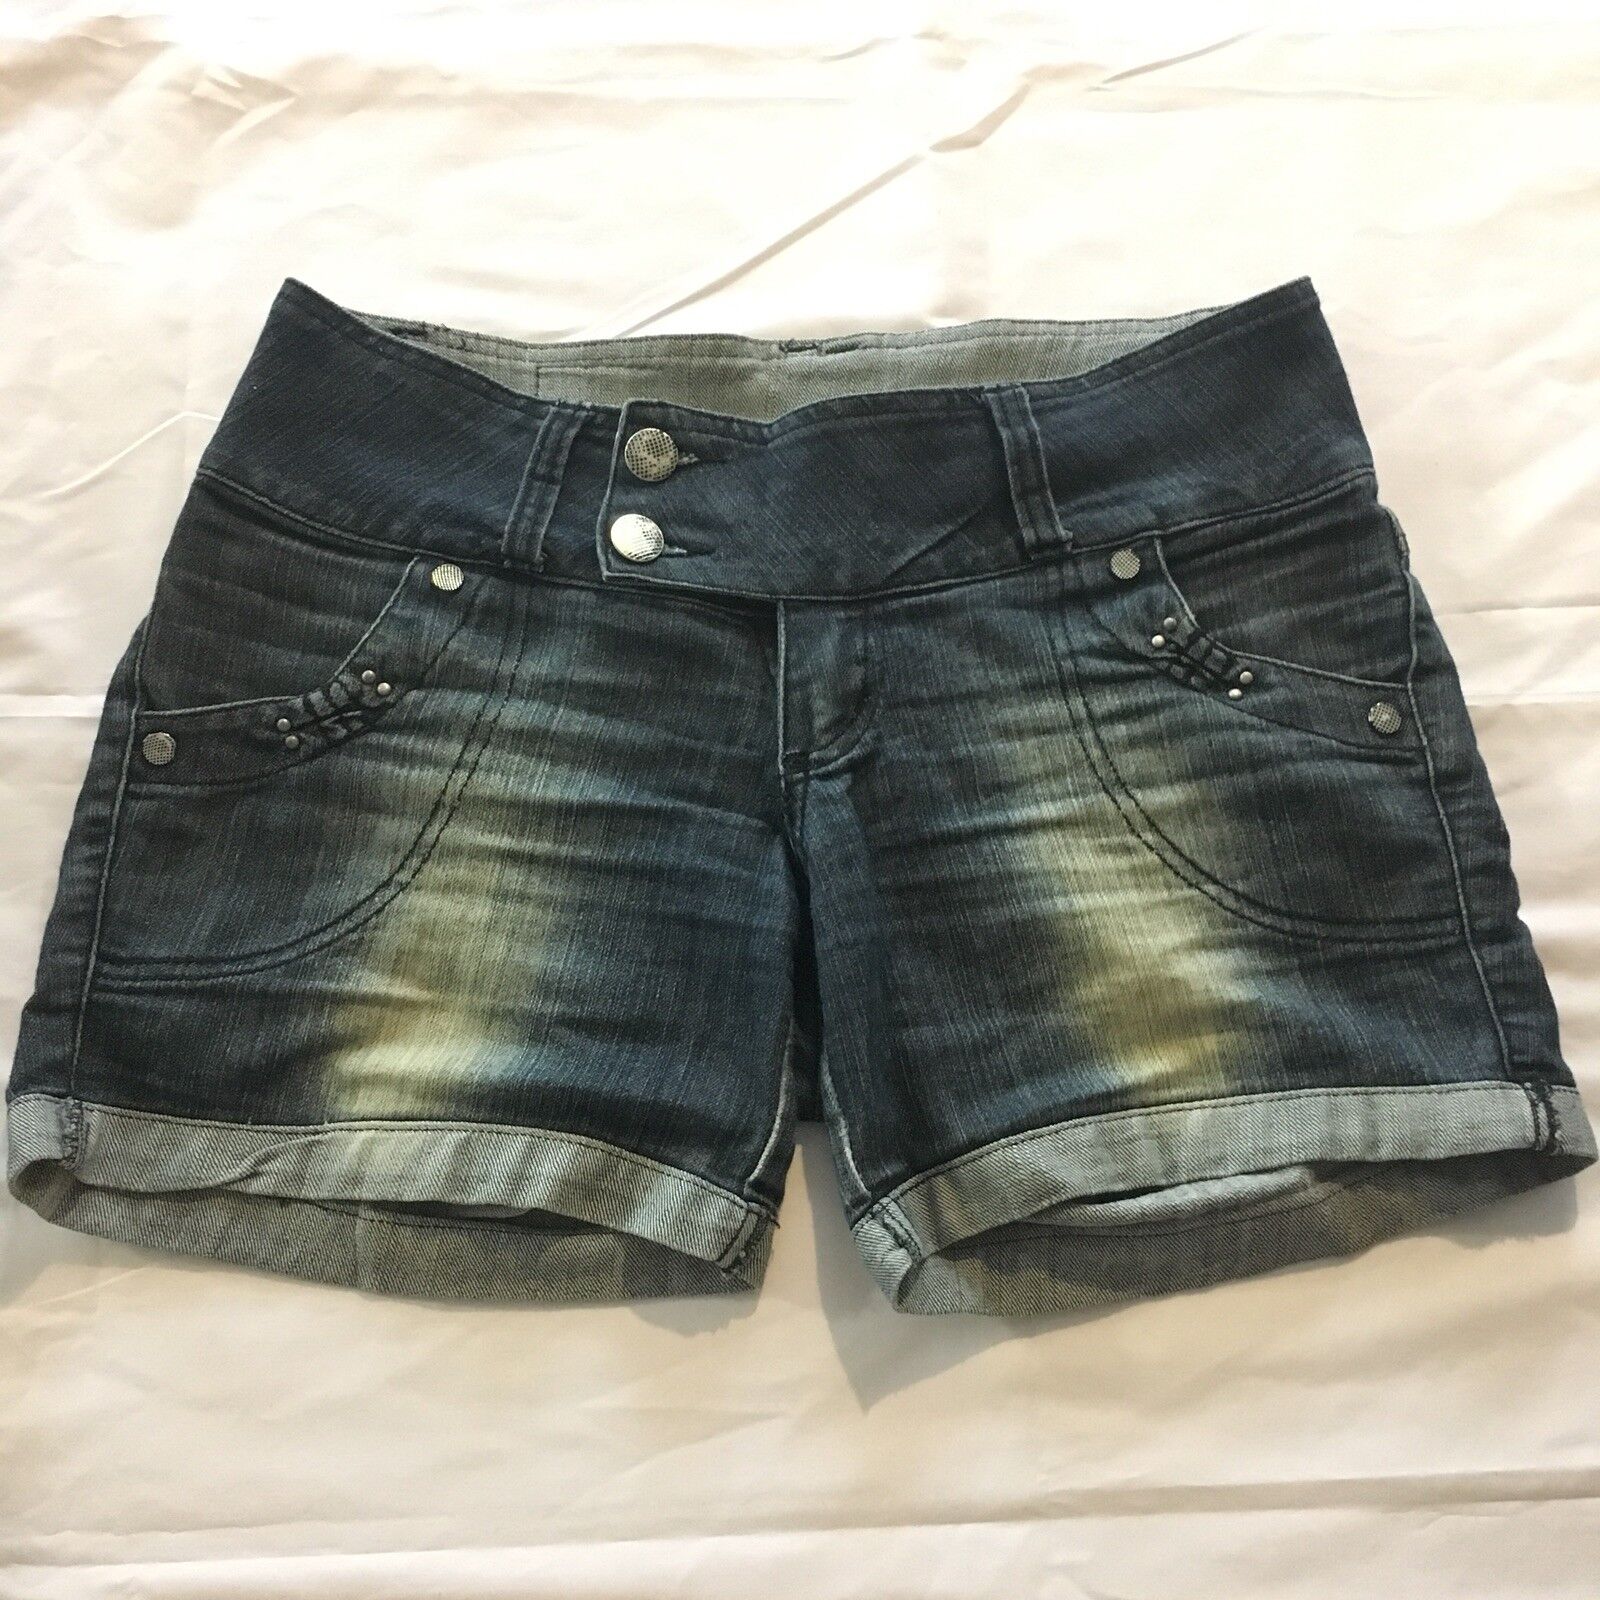 Lon-X Lon X Juniors Distressed Denim Shorts Size 44 Cuff Blue Jean Mid Rise